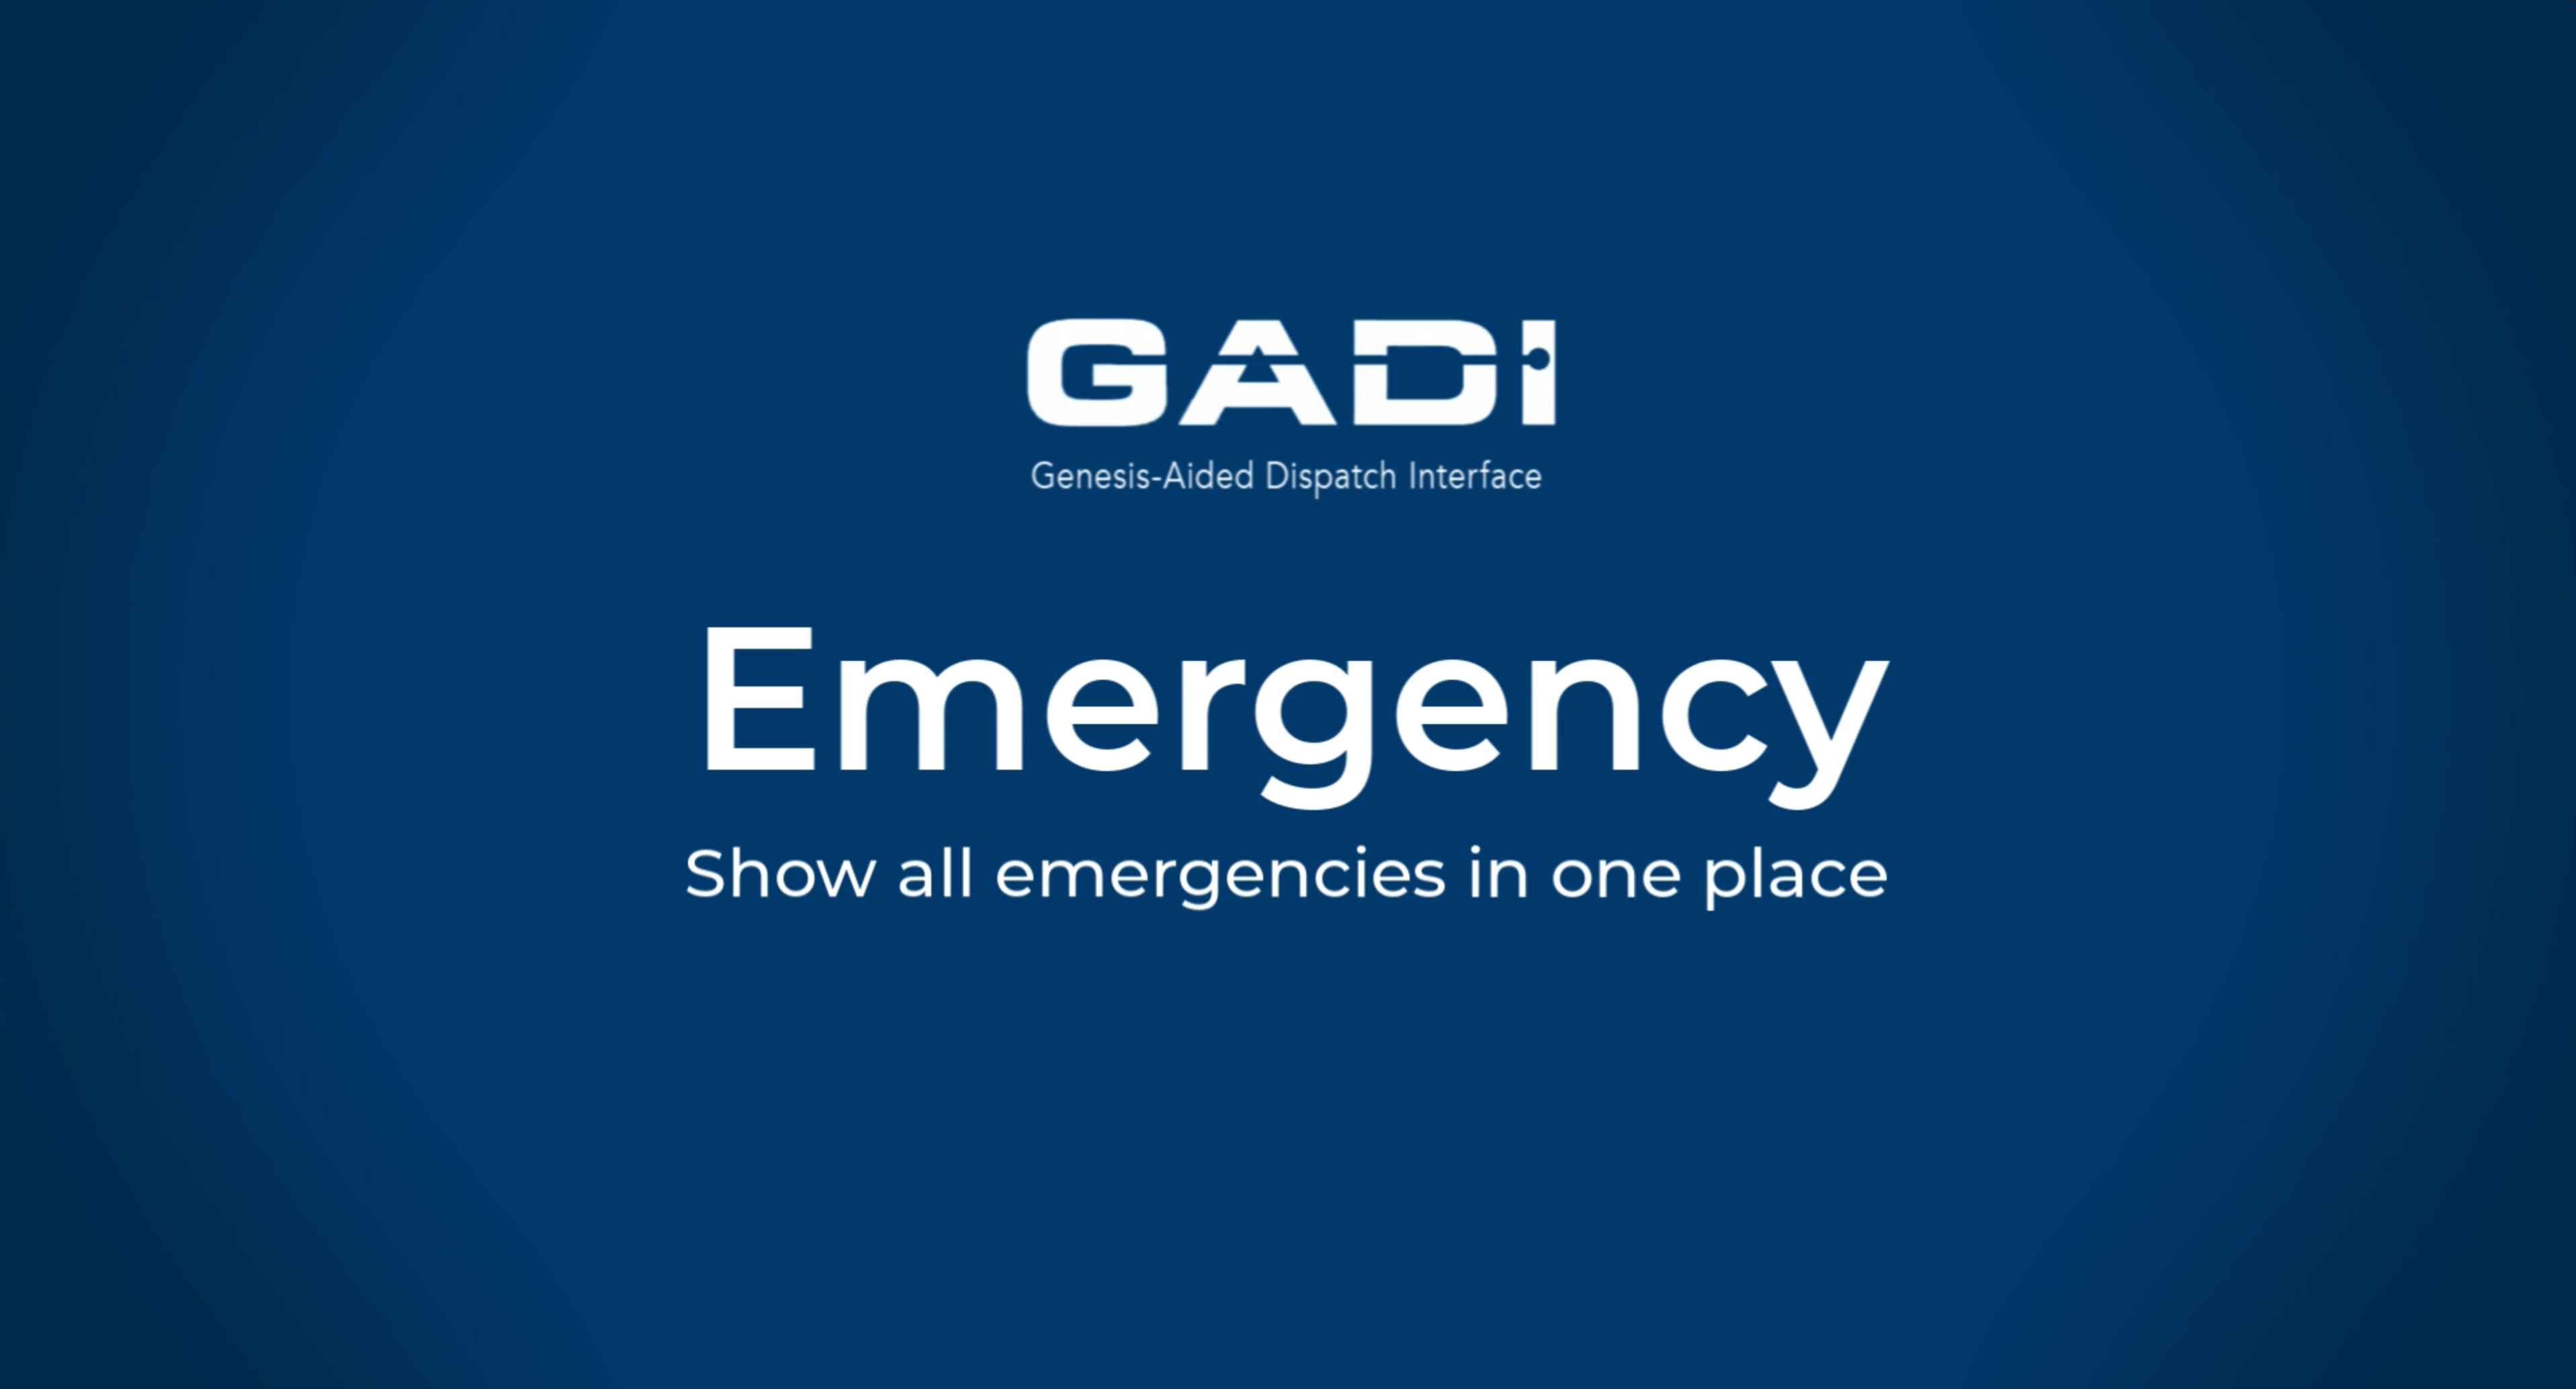 GADI_Emergency